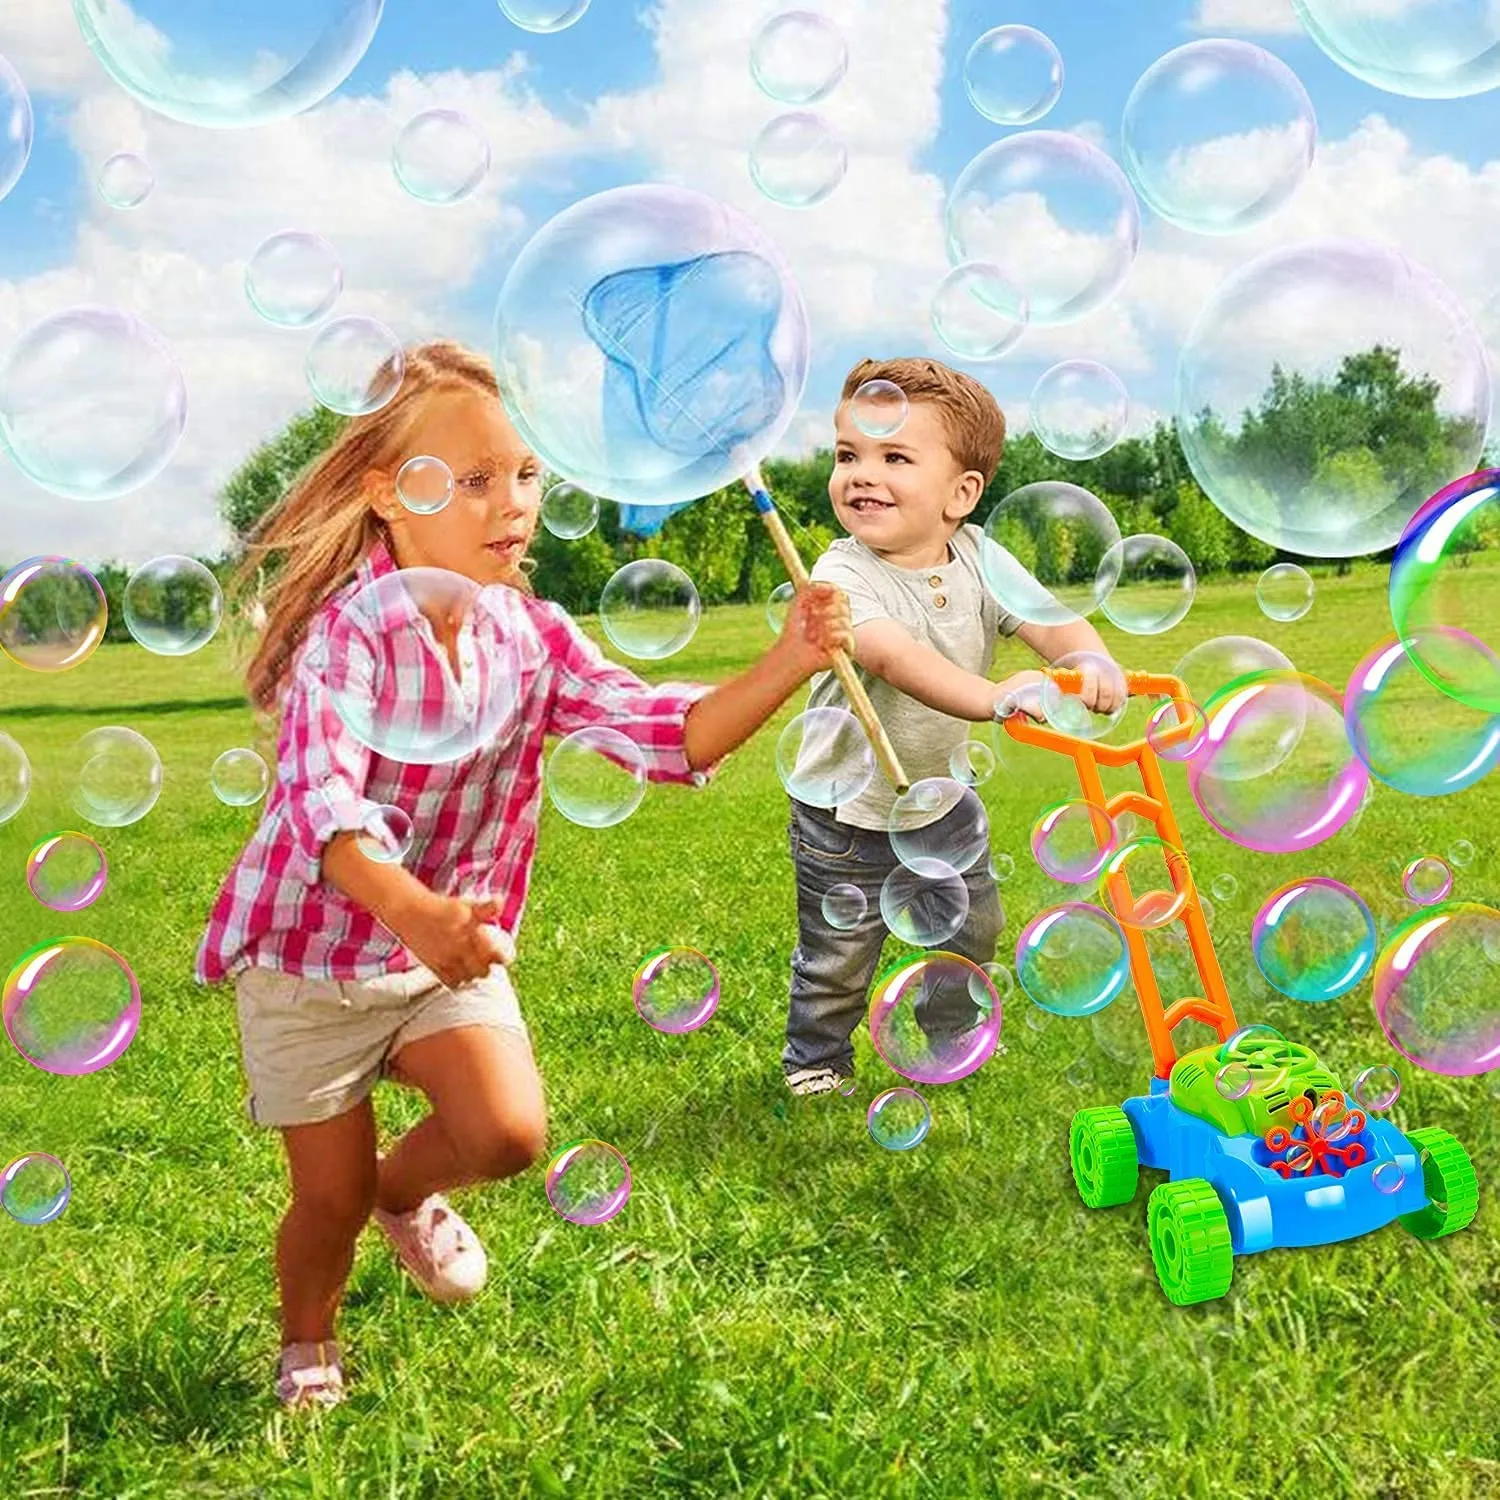 Детска музикална косачка за бутане със сапунени балони | Iguana.bg 20